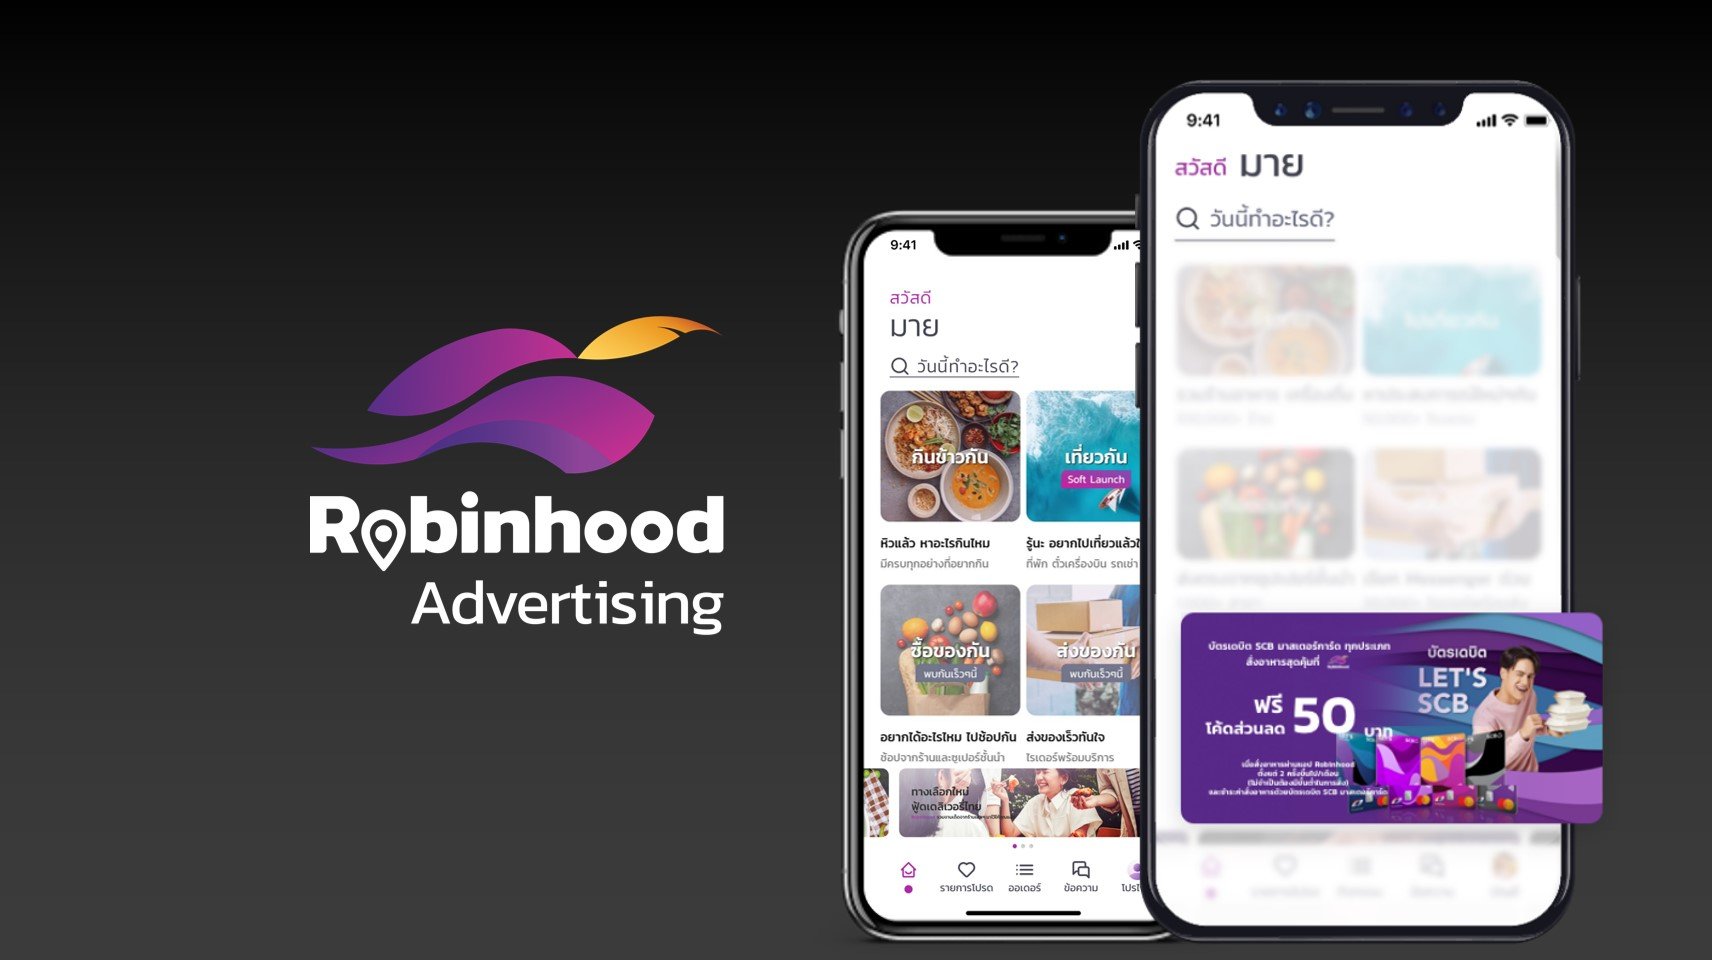 โรบินฮู้ด เปิดตัวธุรกิจโฆษณาดิจิทัลบนแพลตฟอร์ม สานเป้าหมายการเป็น Super App 